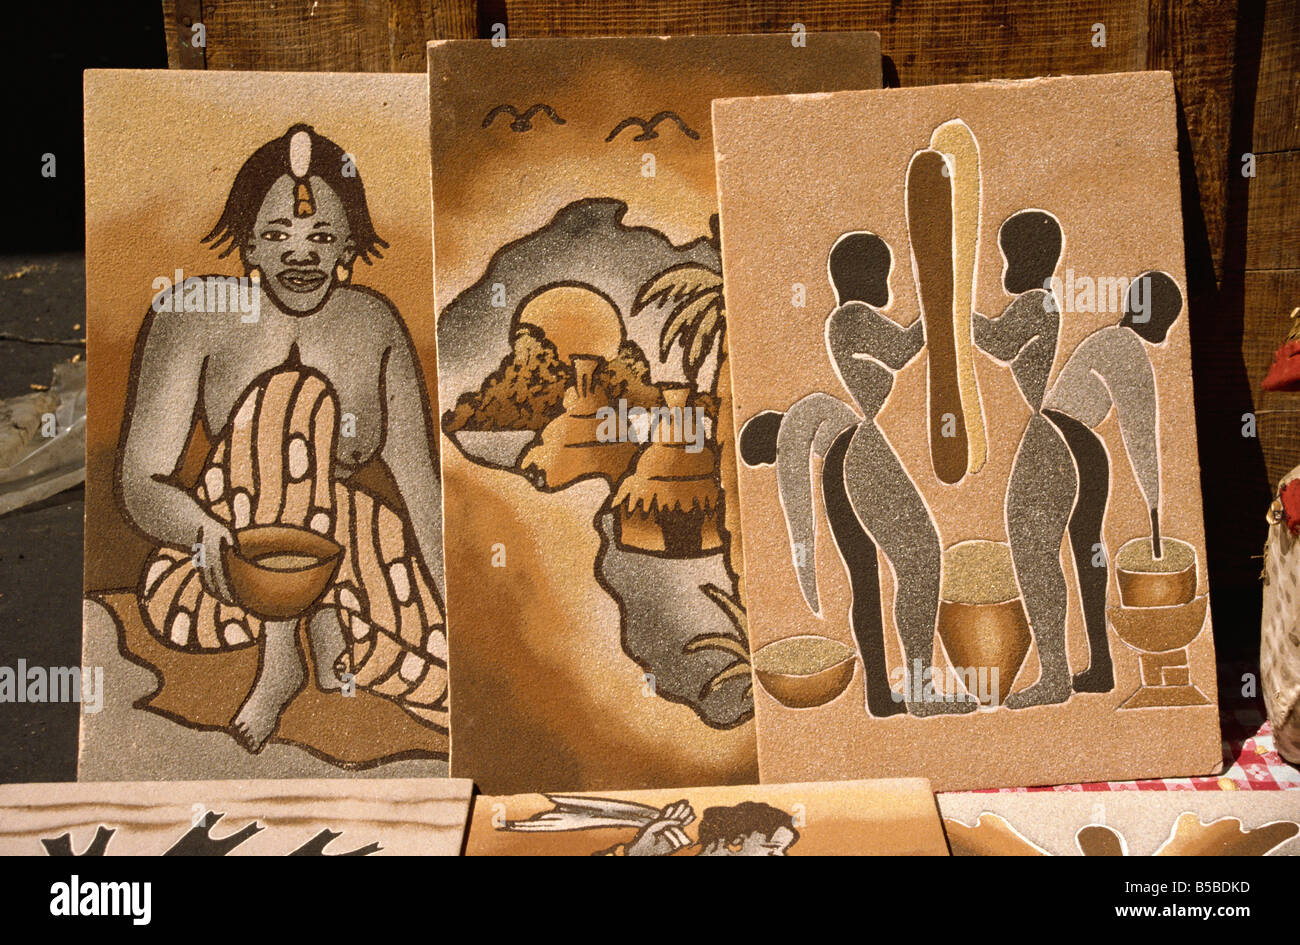 Peintures de sable au Sénégal Dakar Afrique Afrique de l'Ouest Banque D'Images